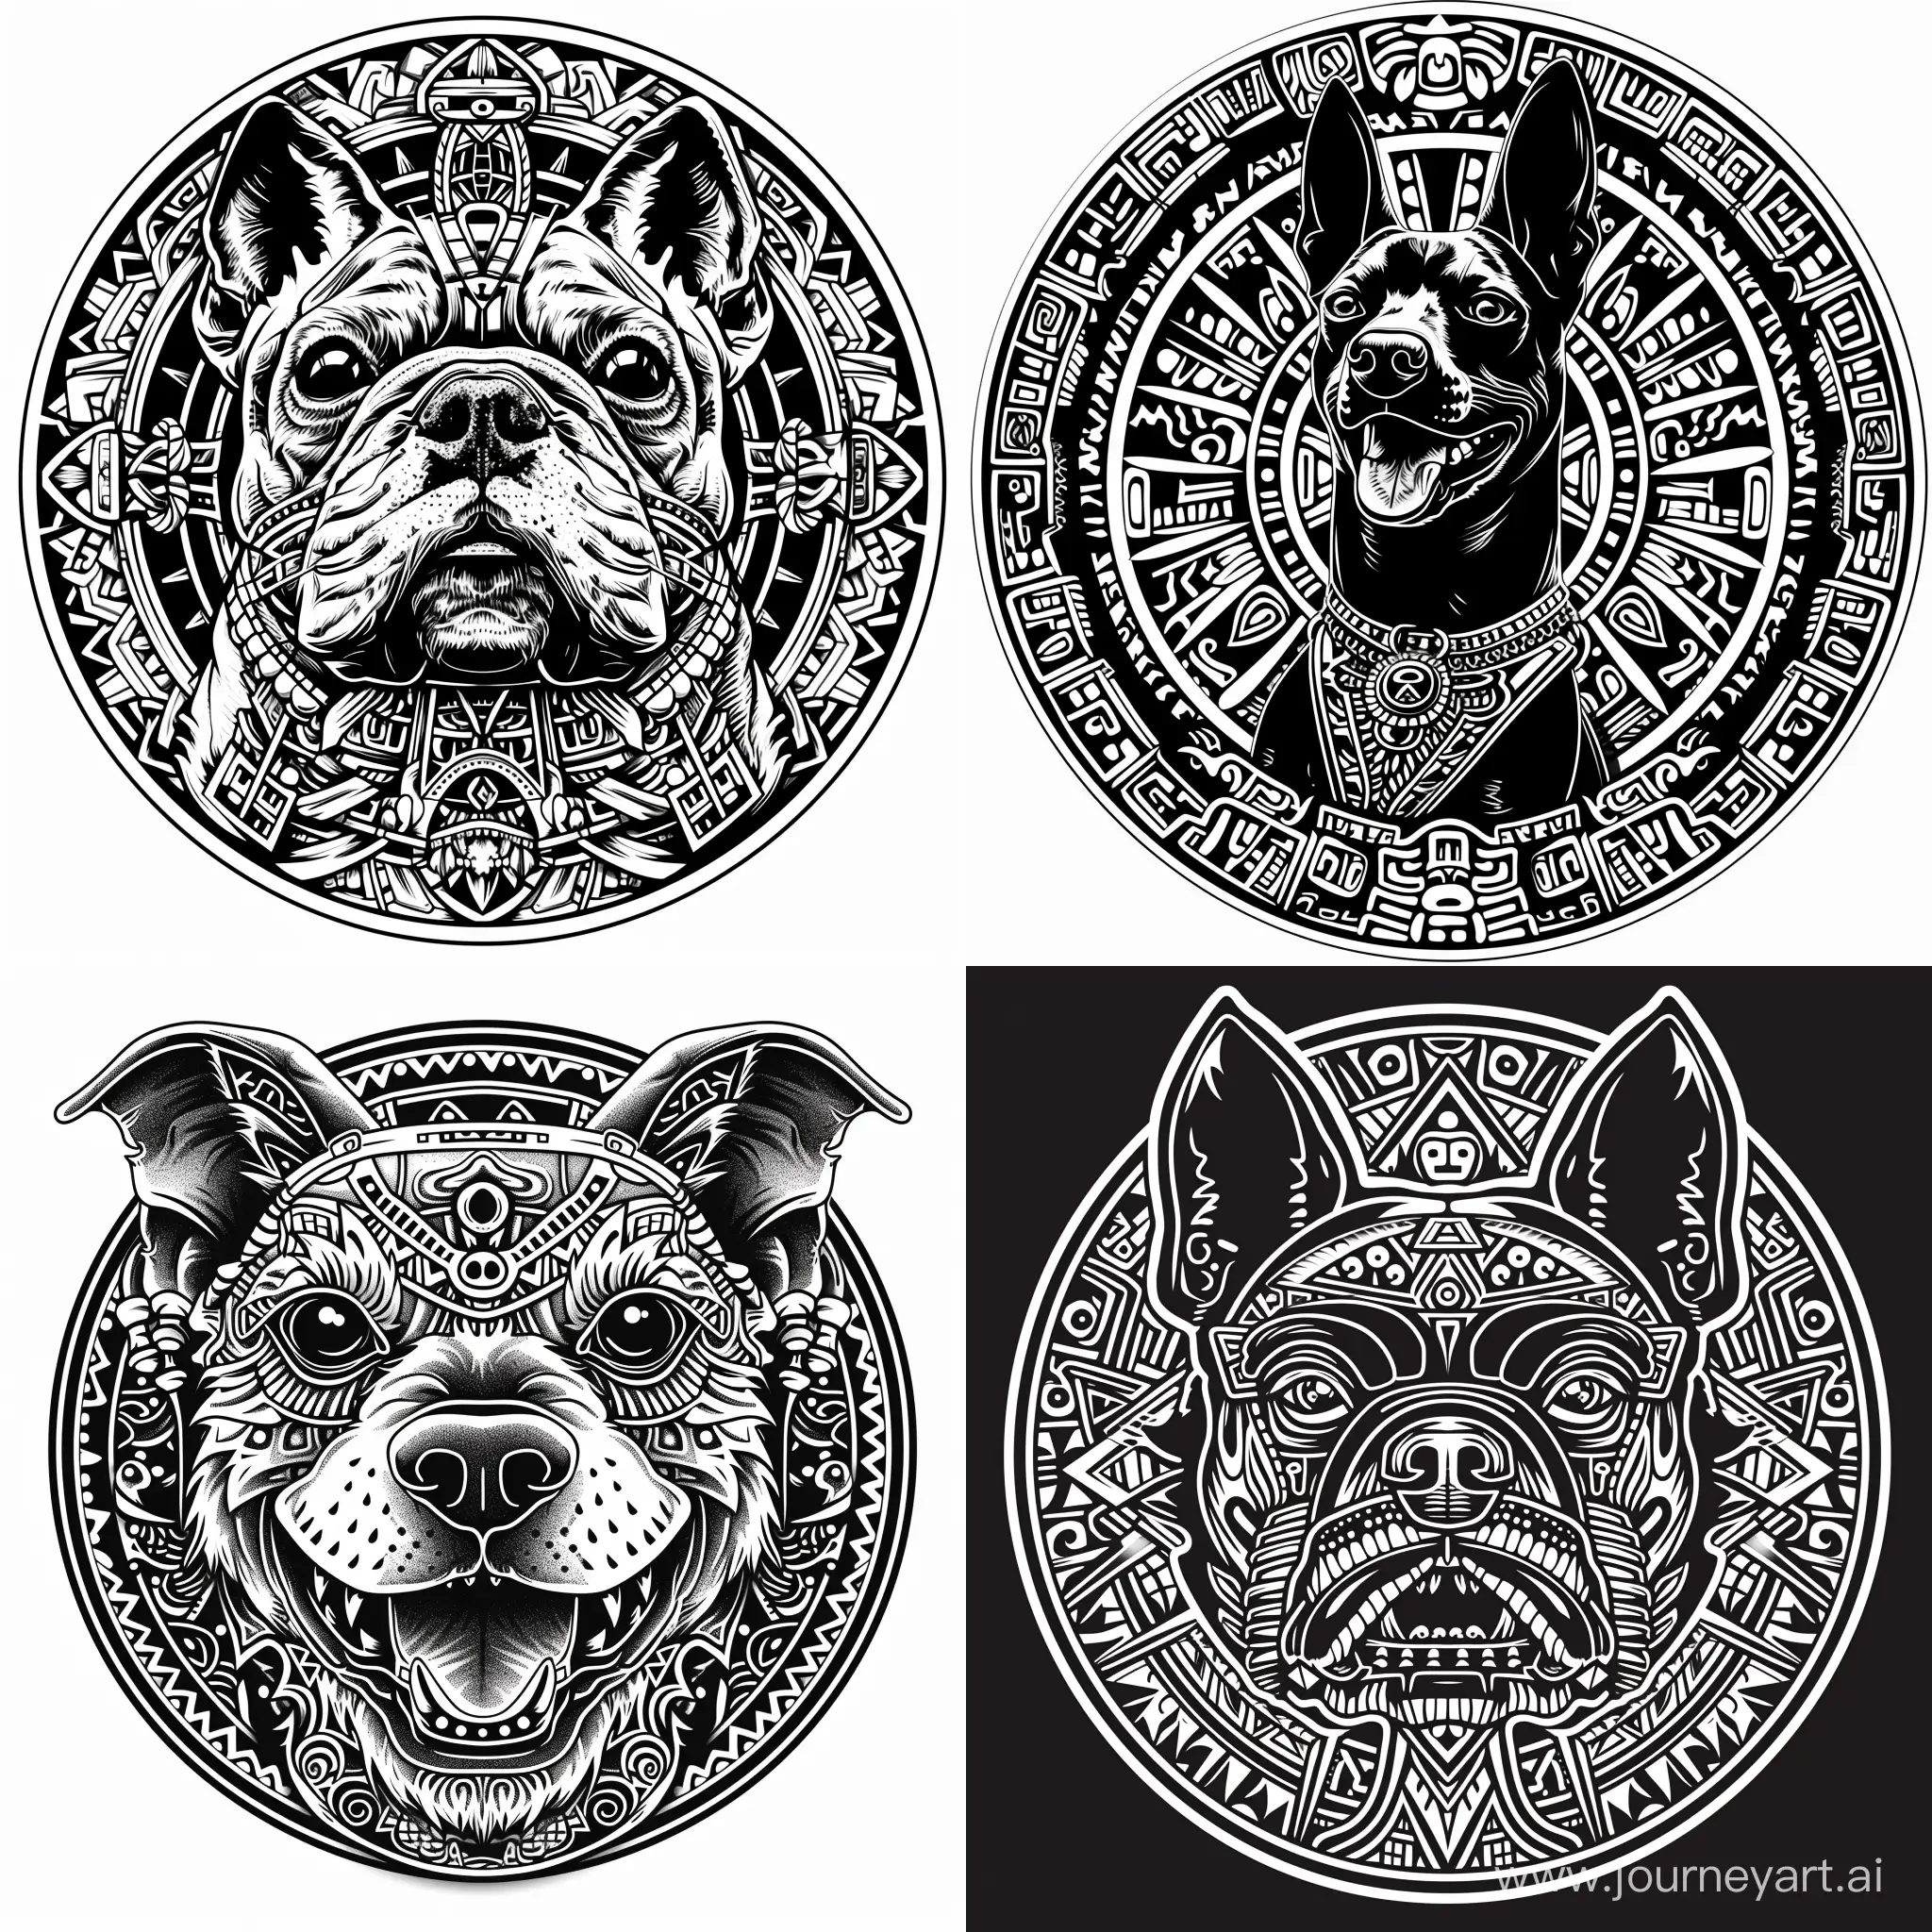 нарисуй плоское черно-белое изображение без теней и полутонов для собачьего медальона размером 22х36 мм в стиле индейцев майя и ацтеков минимум деталей